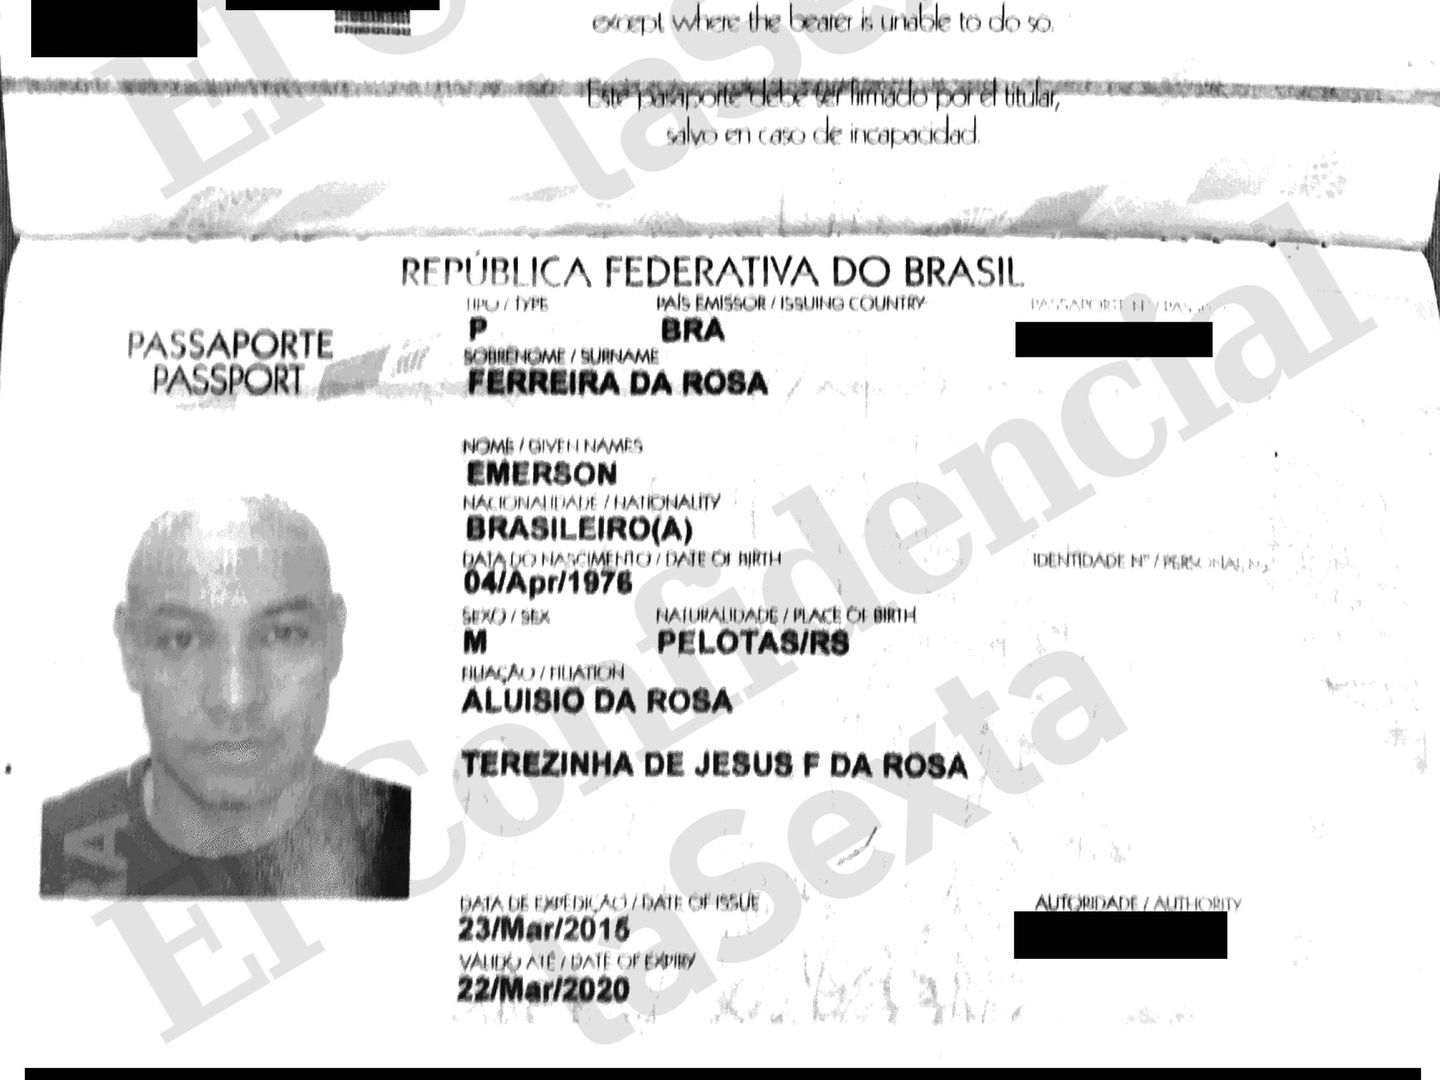 El pasaporte de Emerson, tal y como consta en en los archivos de Mossack Fonseca